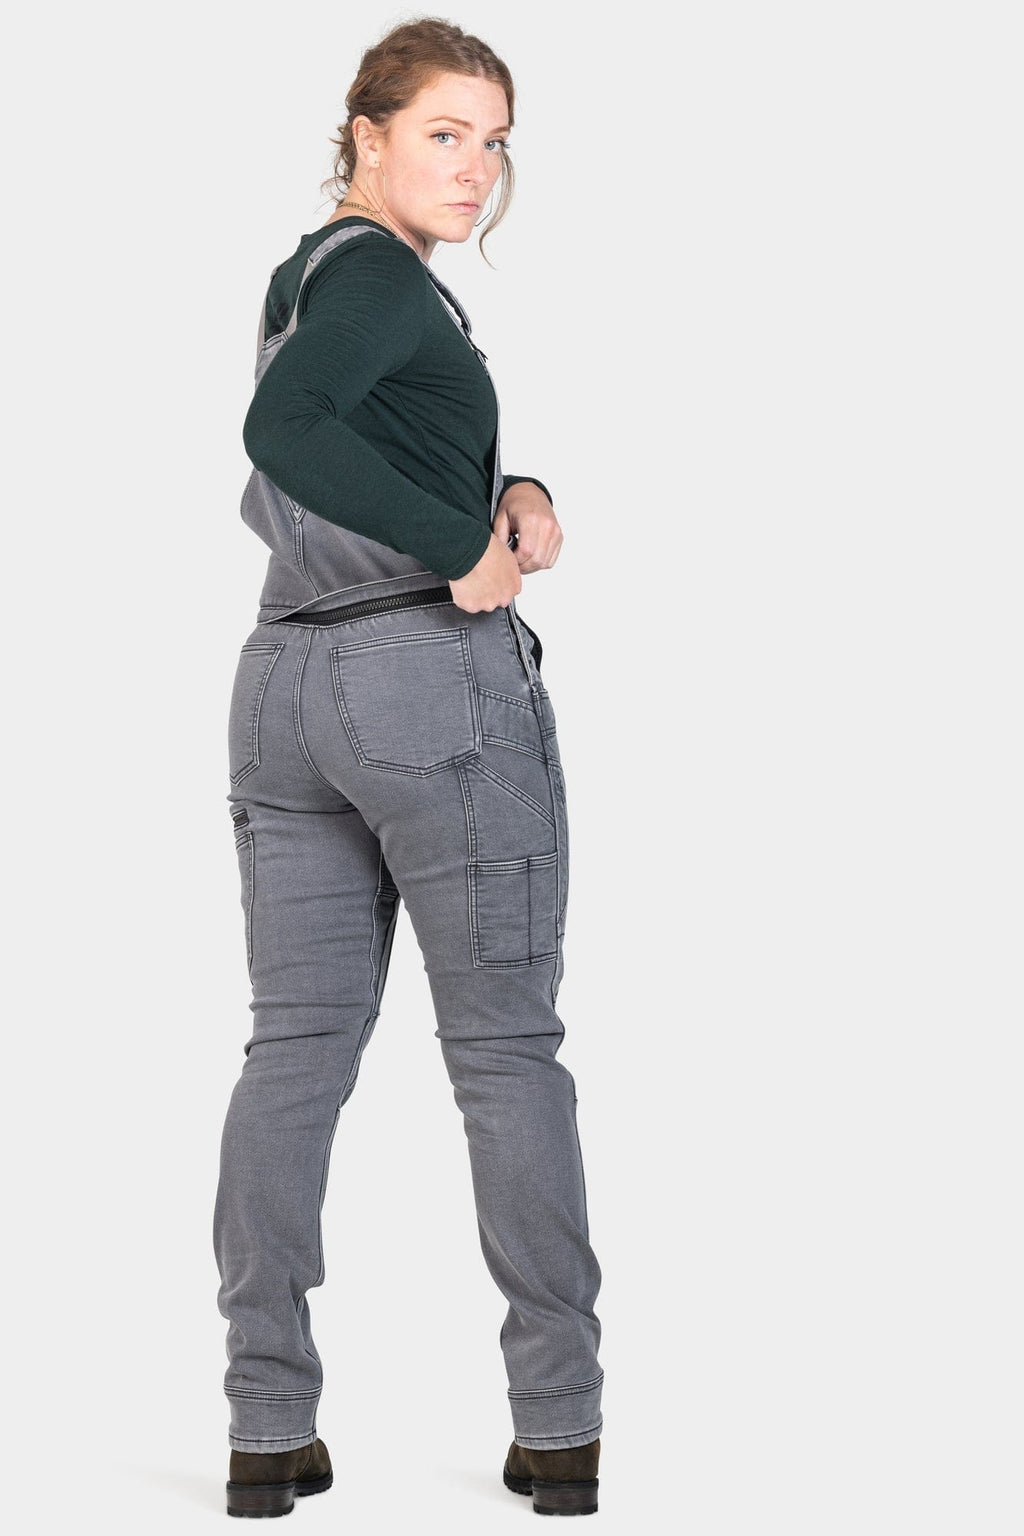 Women's comfortable cargo pants